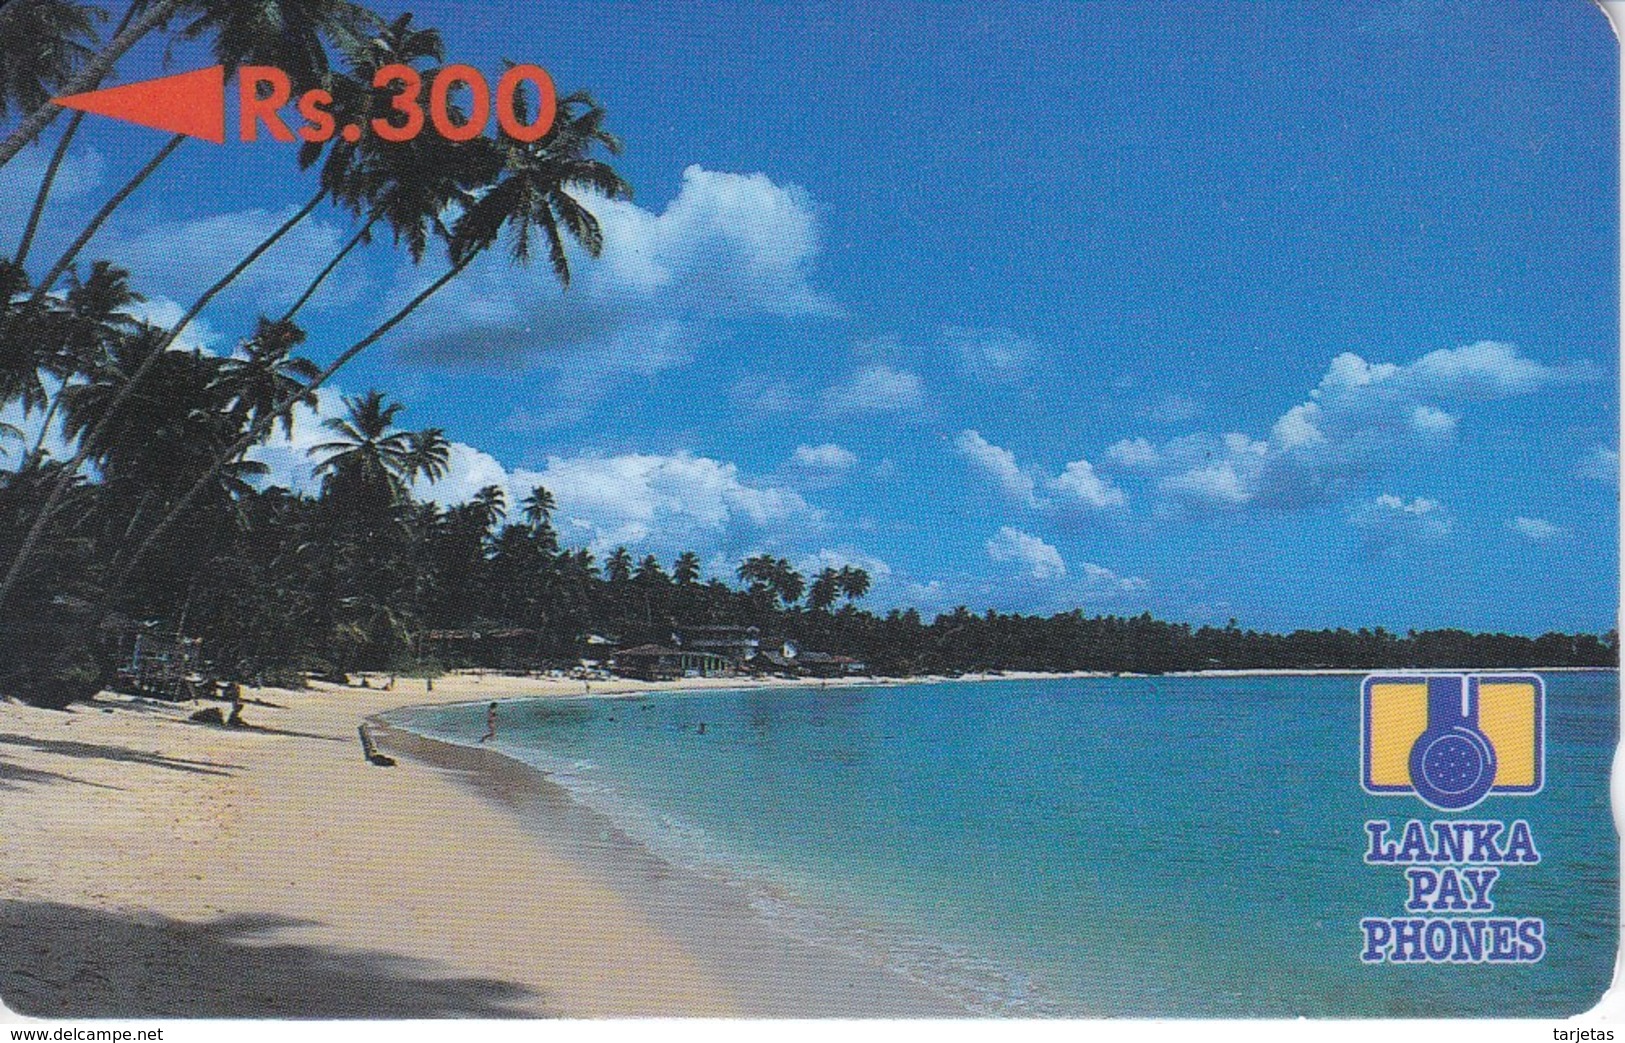 TARJETA DE SRY LANKA DE Rs.300 DE UNA PLAYA (5SRLB) - Sri Lanka (Ceilán)